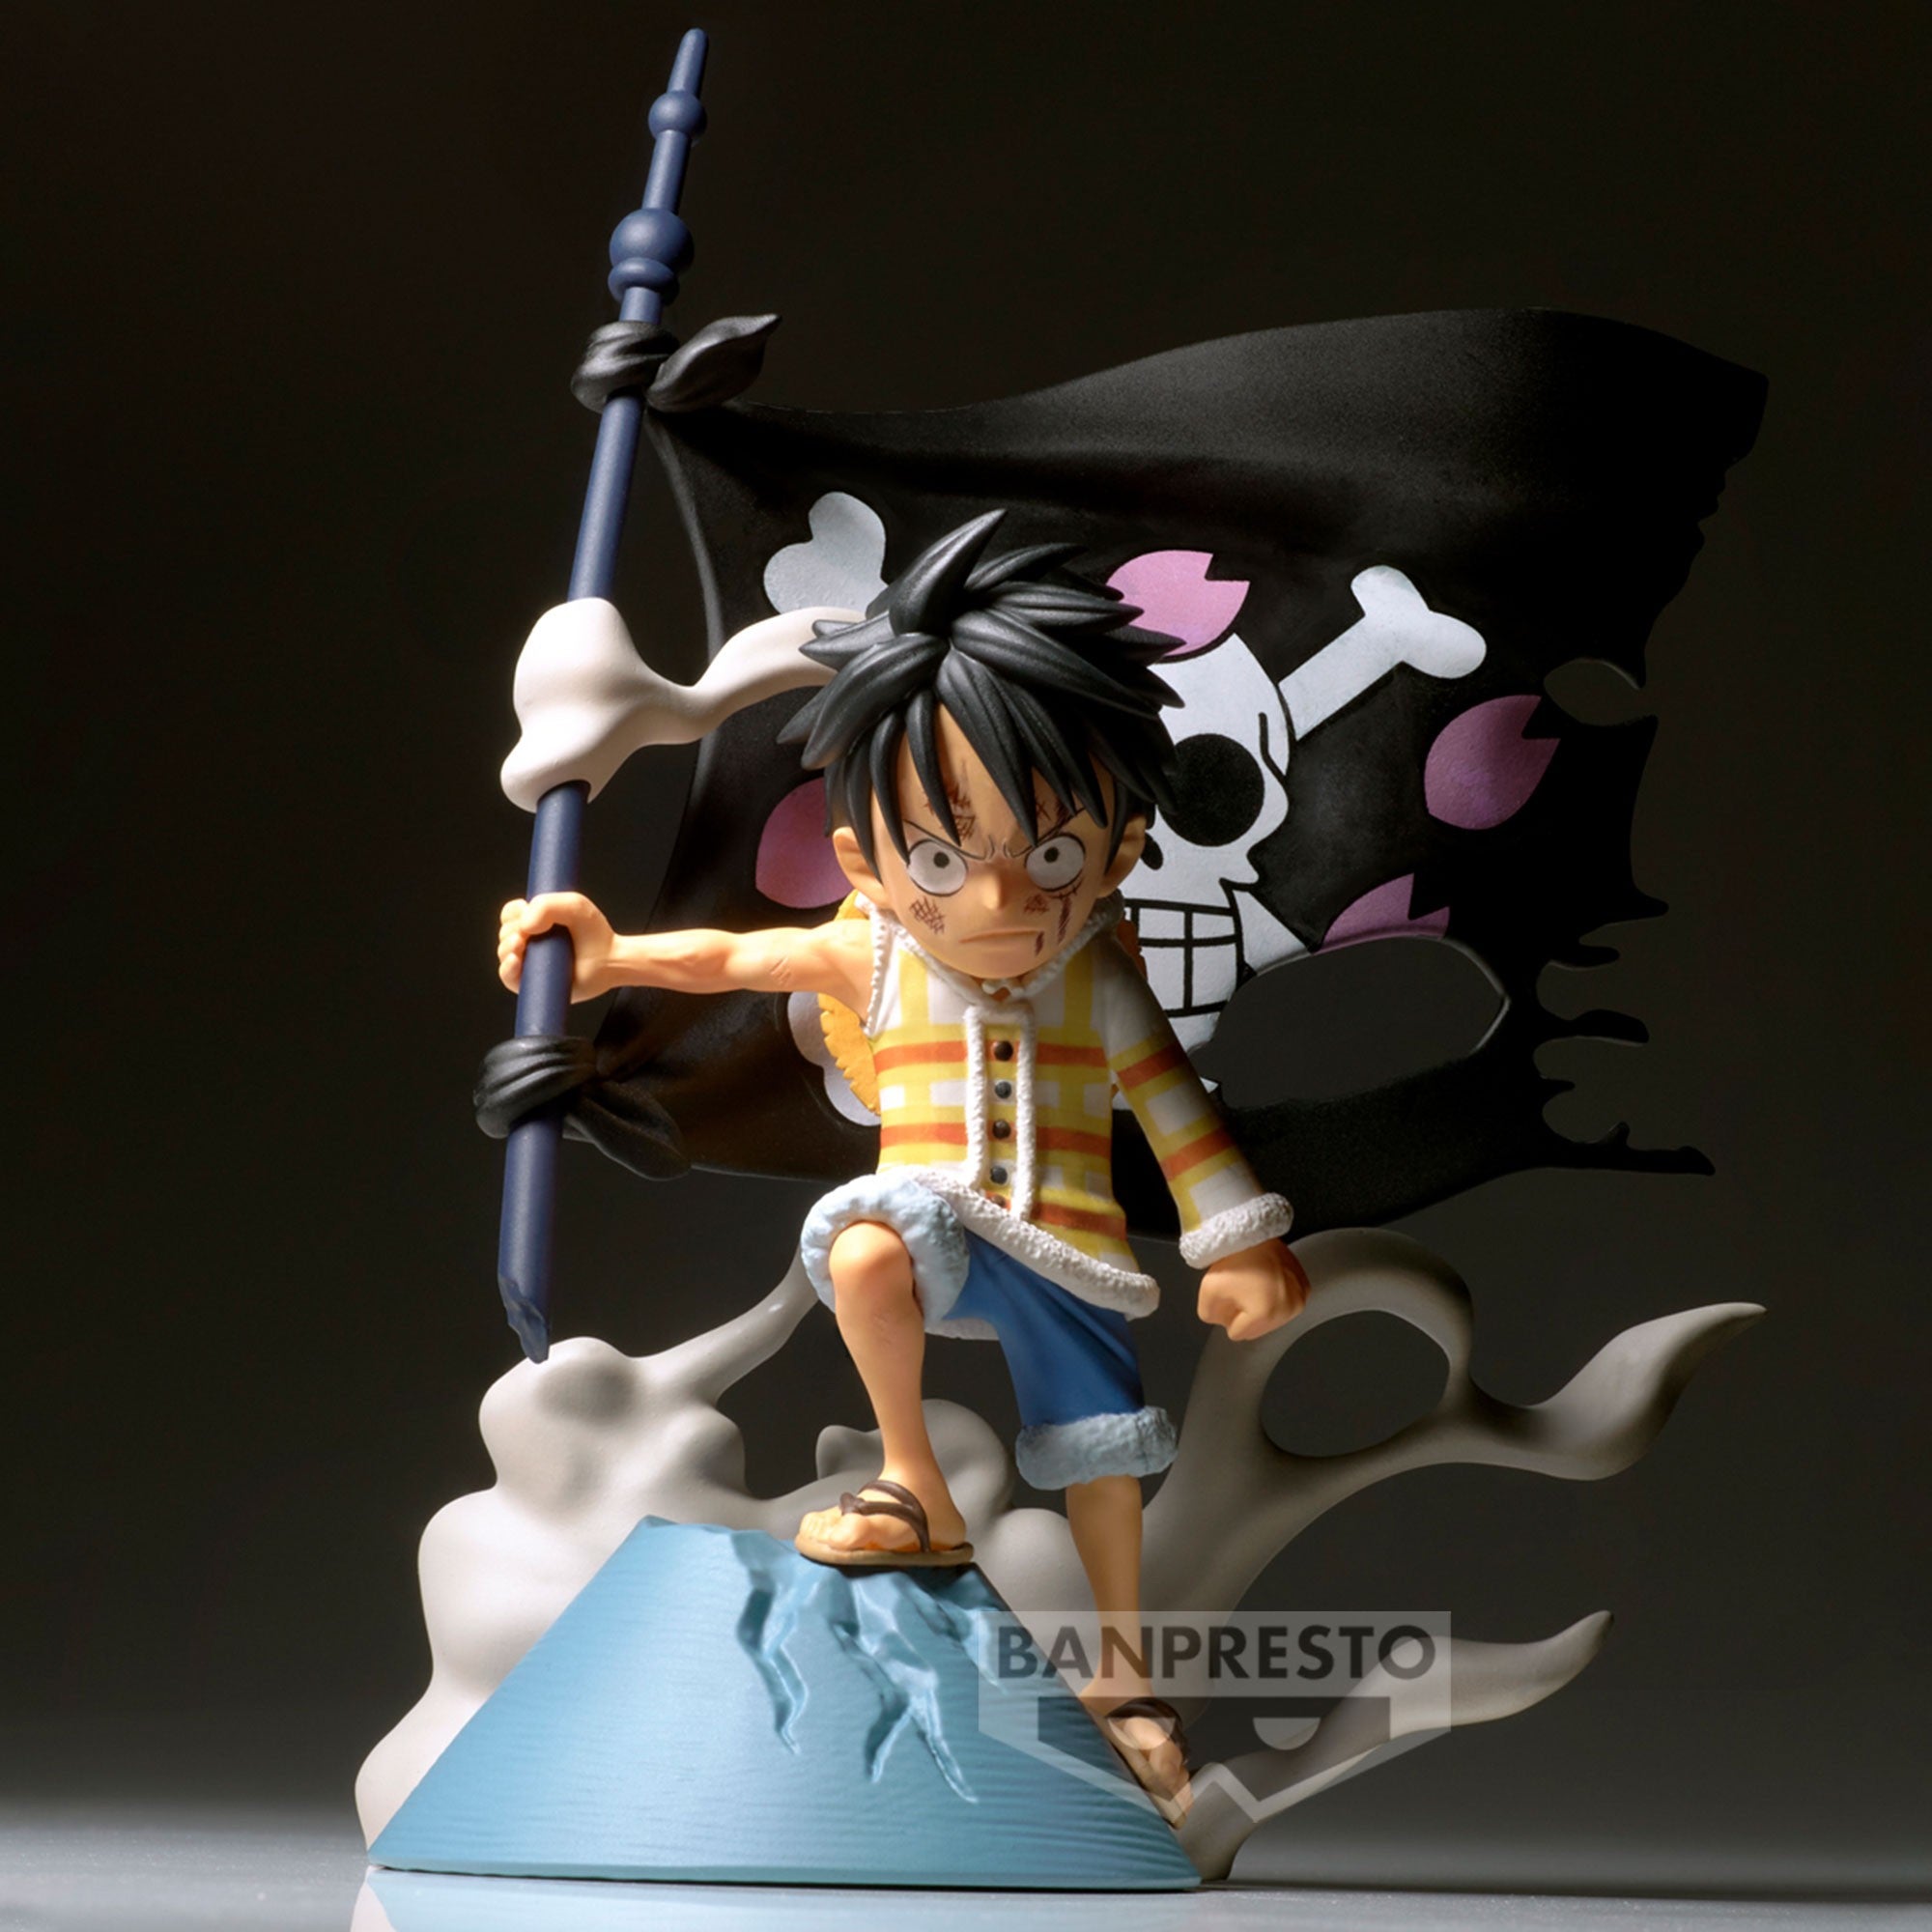 Figurine Drapeau L'Équipage Des Pirates Roger - One Piece - WCF